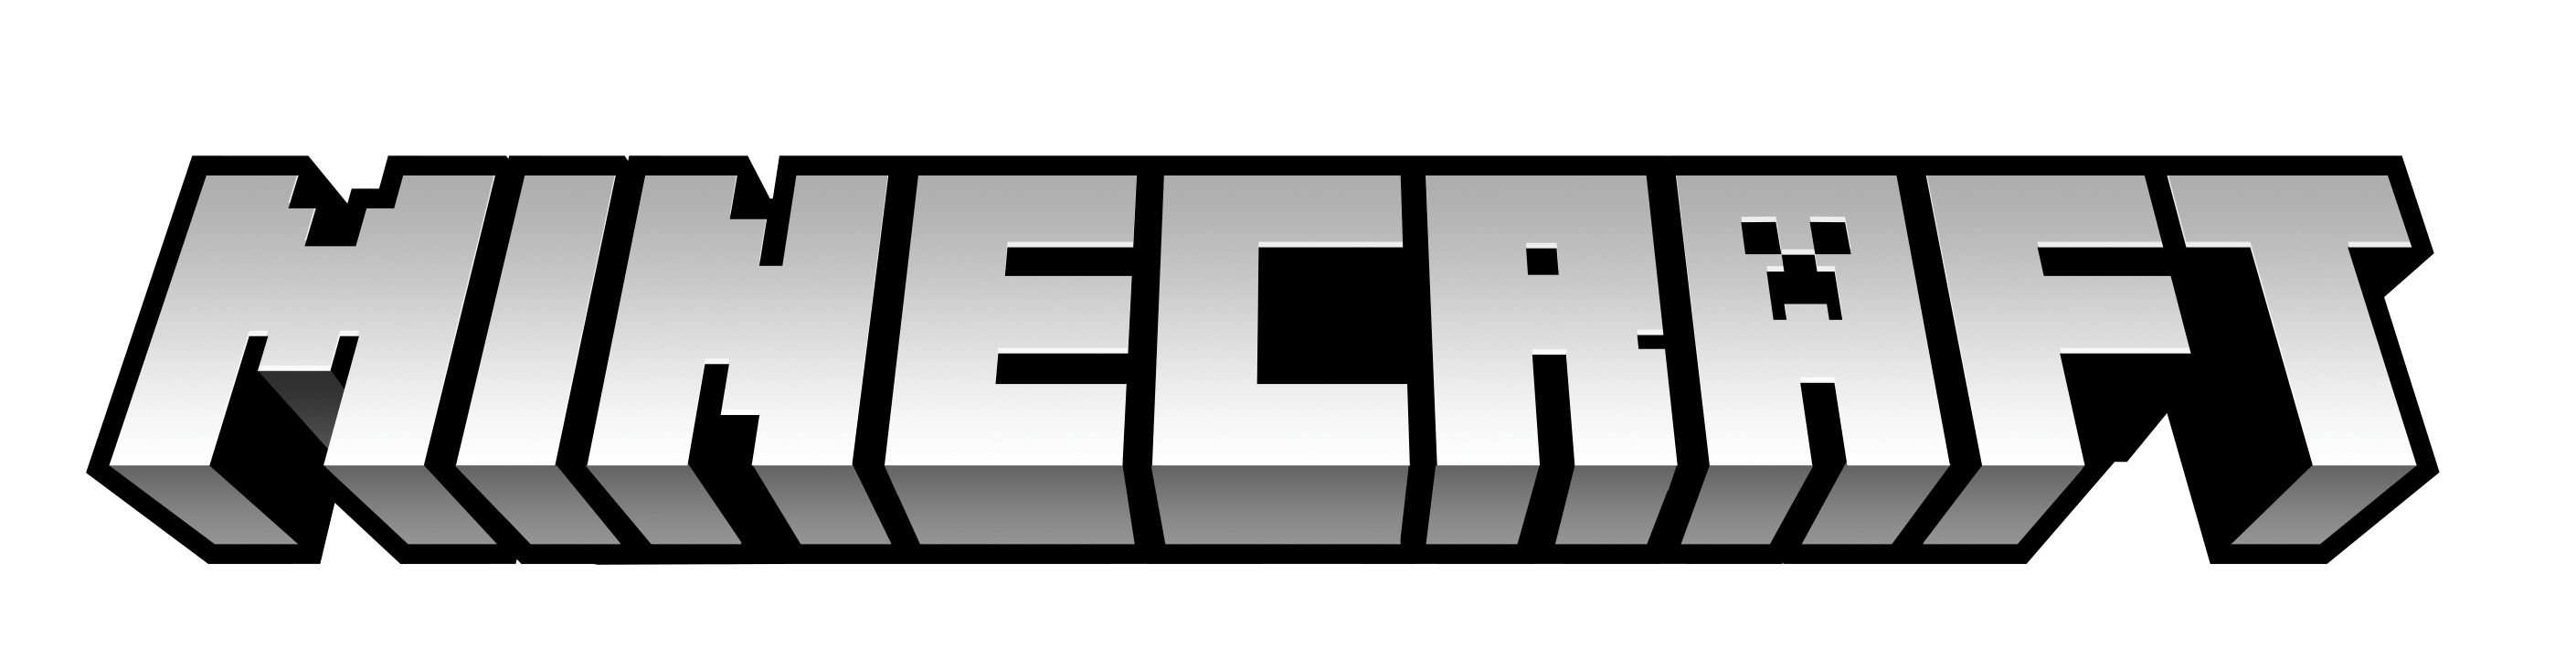 Micraft Logo - The History And Evolution Of Minecraft Logo Design - LogoRealm.com